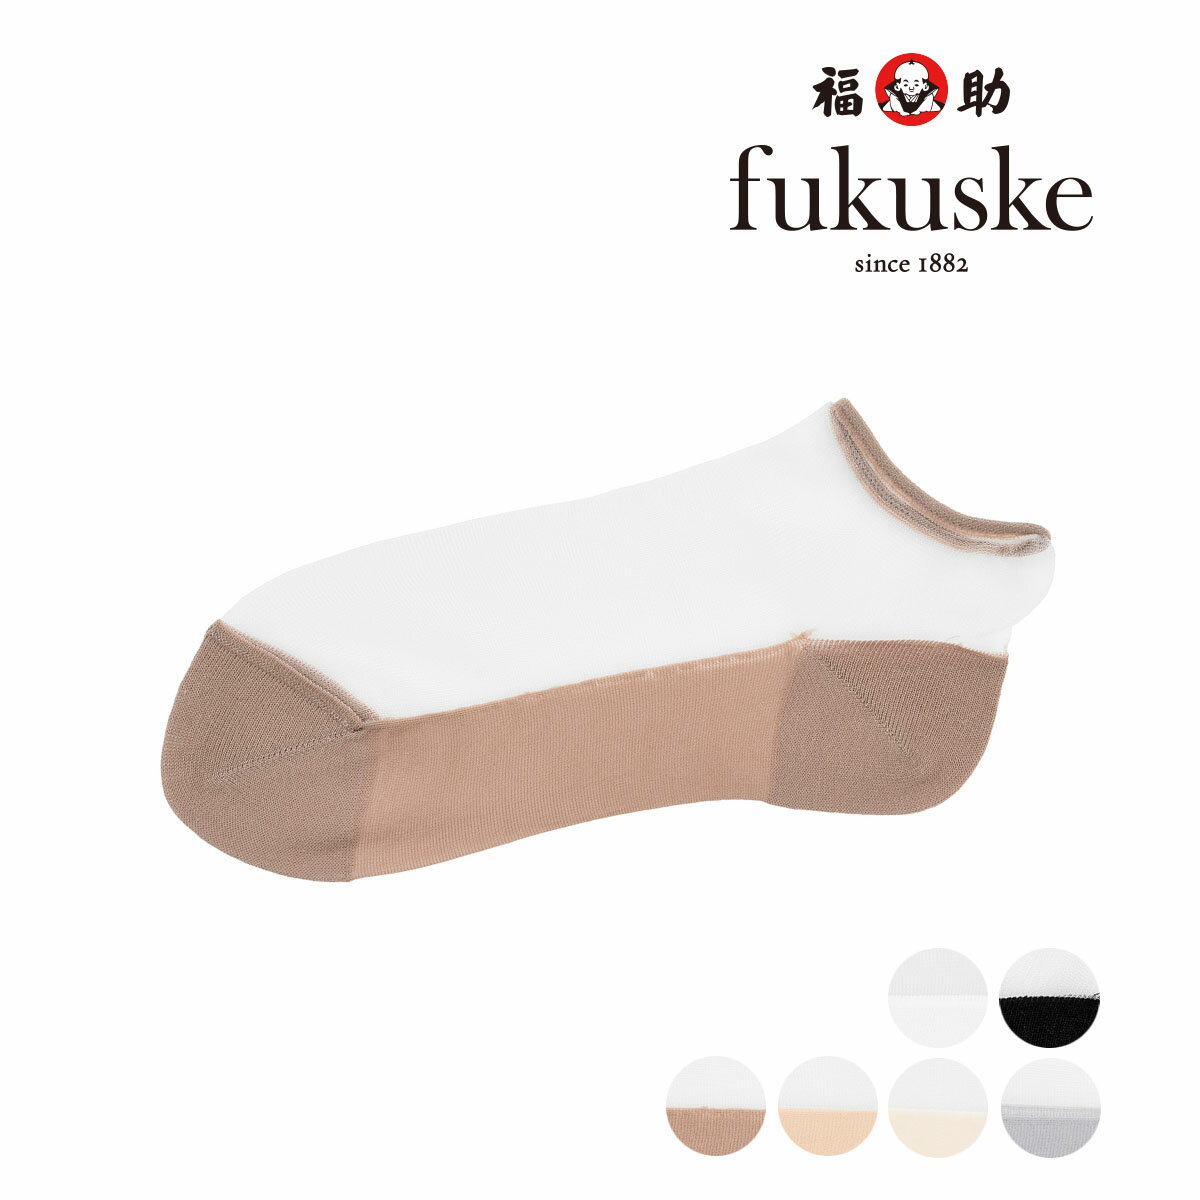 fukuske(フクスケ) ソックス シアー 無地切り替え スニーカー丈 テグス素材 透け感 シースルー 福助 公式